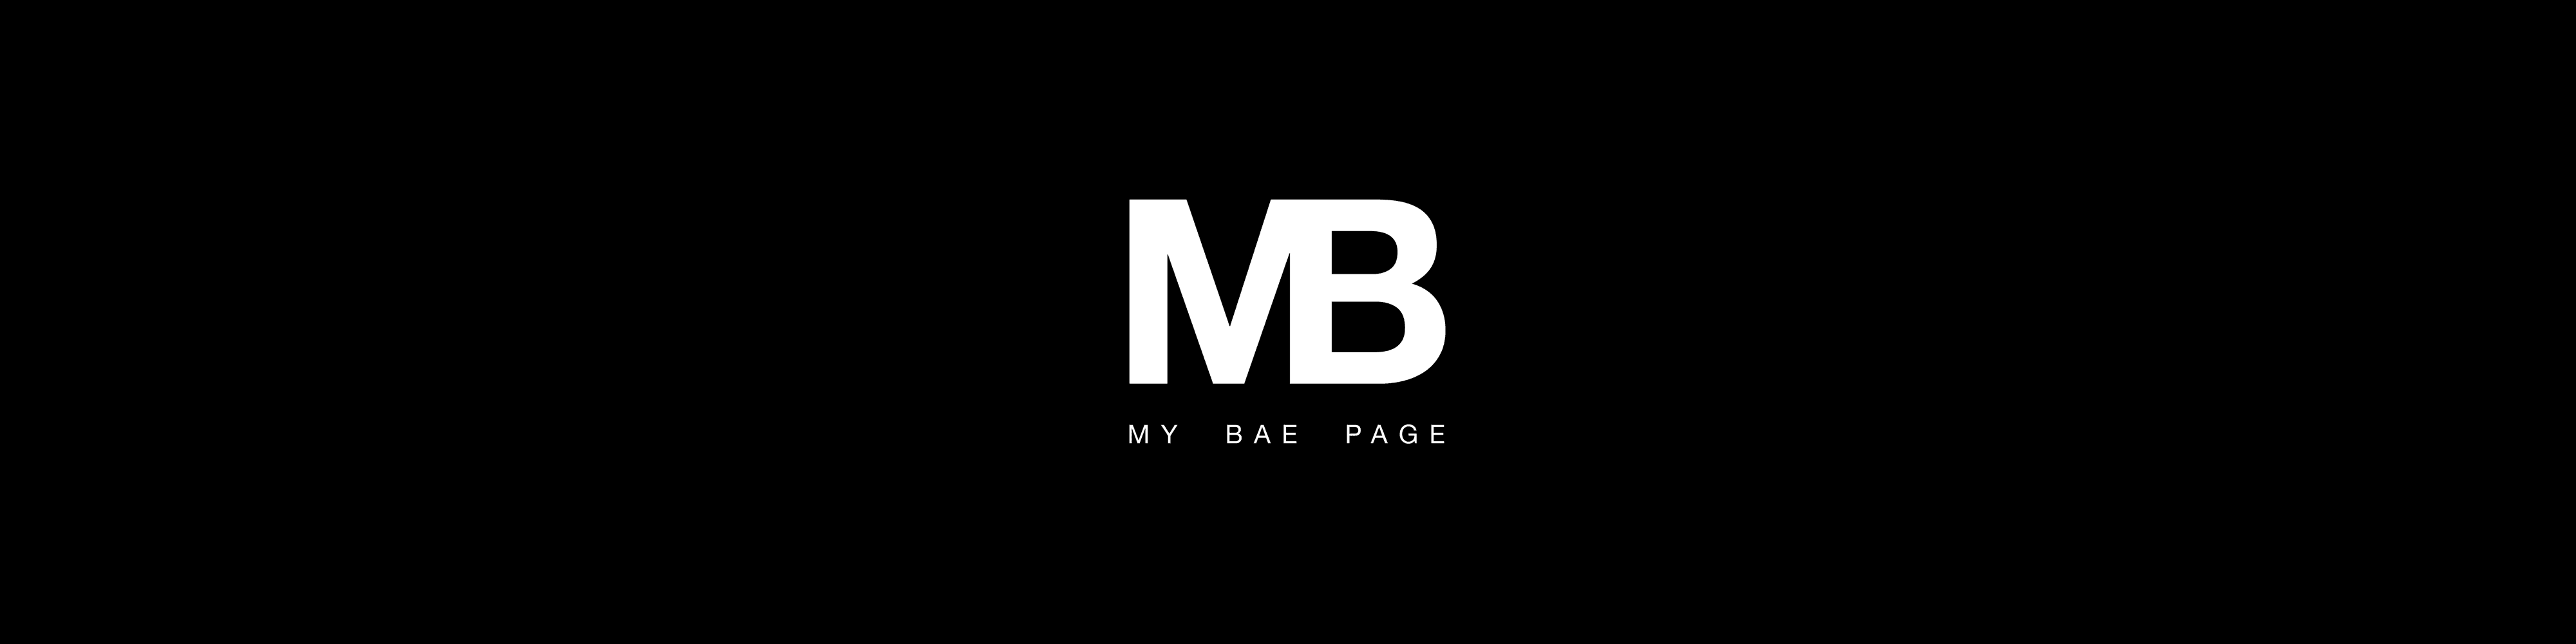 mybae_page banner